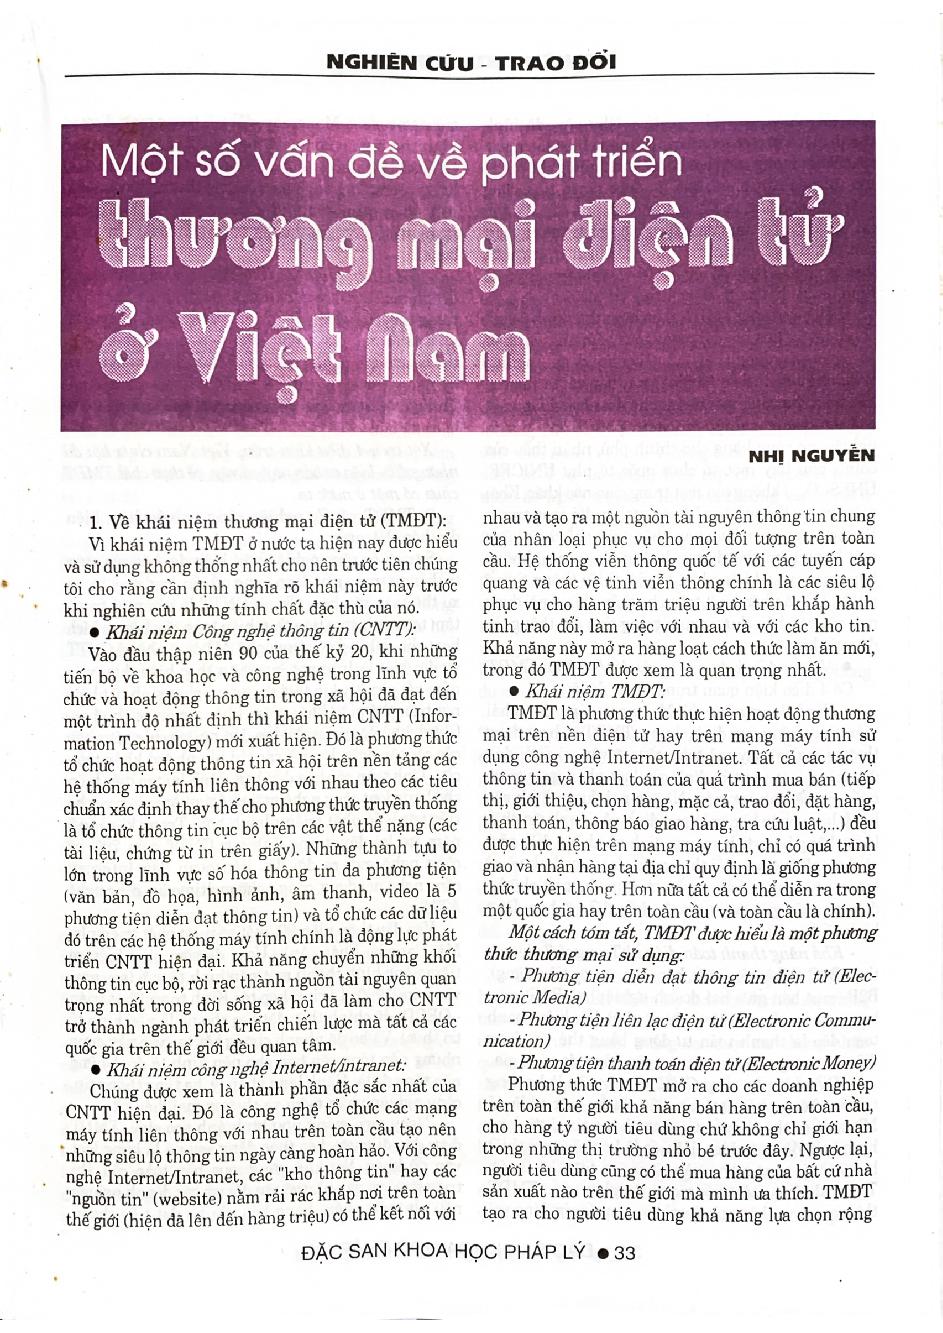 Một số vấn đề về phát triển thương mại điện tử ở Việt Nam